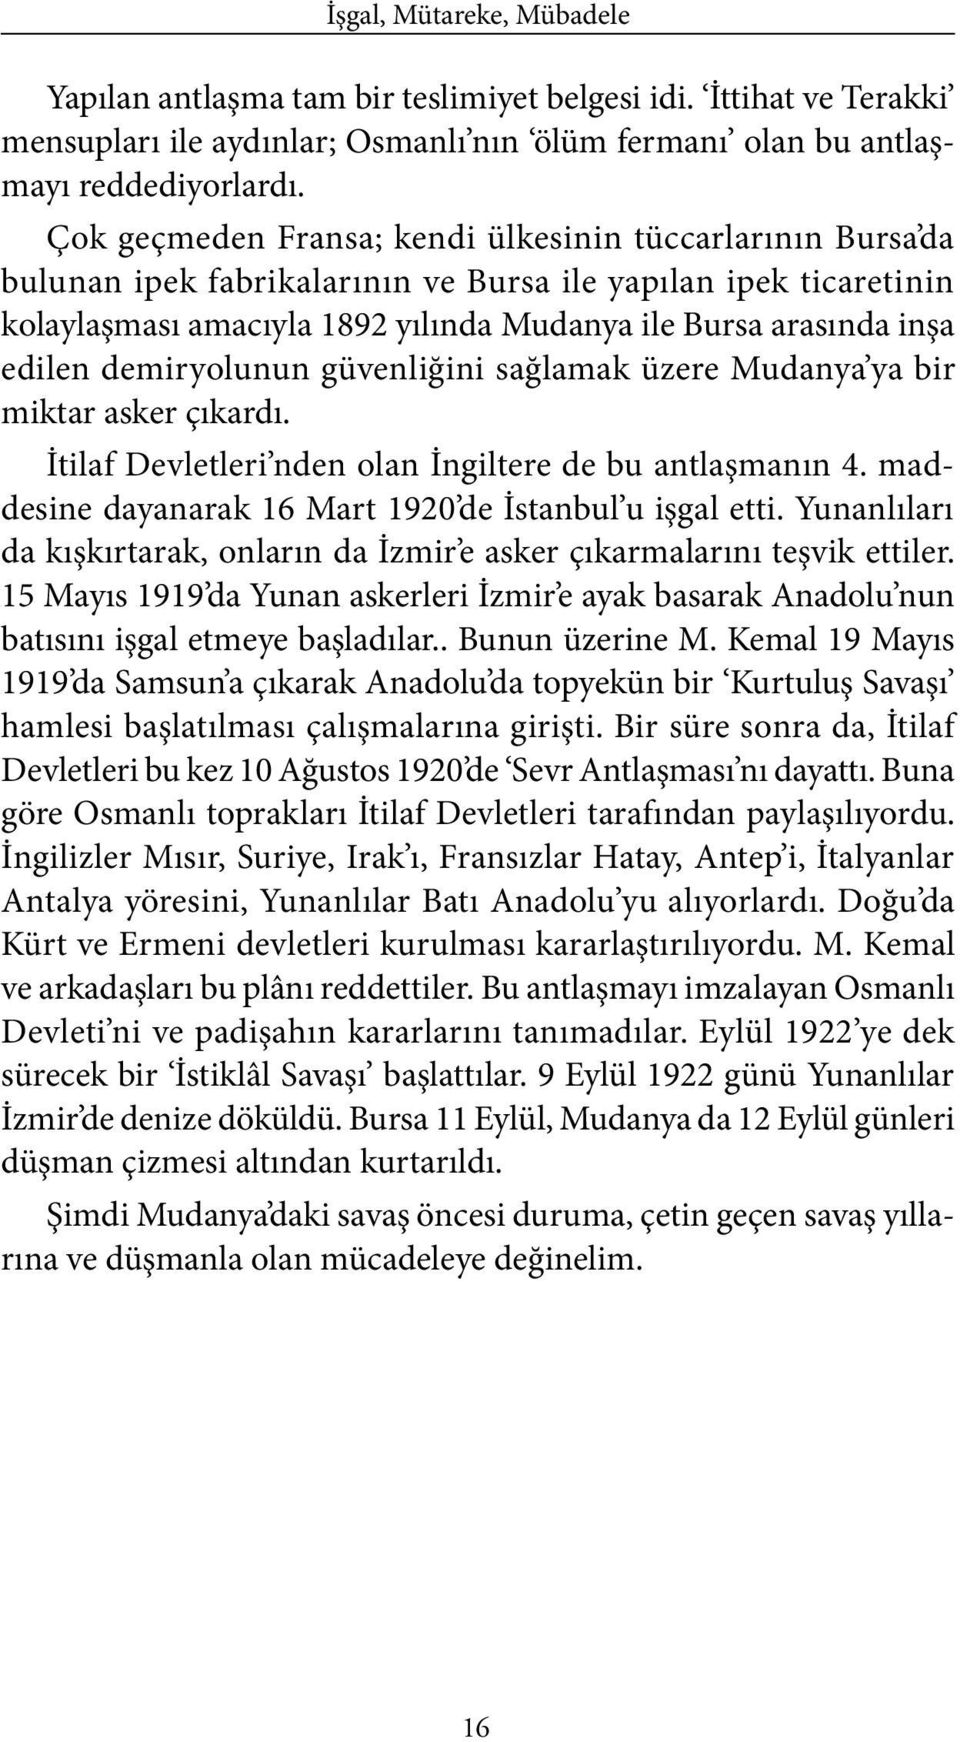 demiryolunun güvenliğini sağlamak üzere Mudanya ya bir miktar asker çıkardı. İtilaf Devletleri nden olan İngiltere de bu antlaşmanın 4. maddesine dayanarak 16 Mart 1920 de İstanbul u işgal etti.